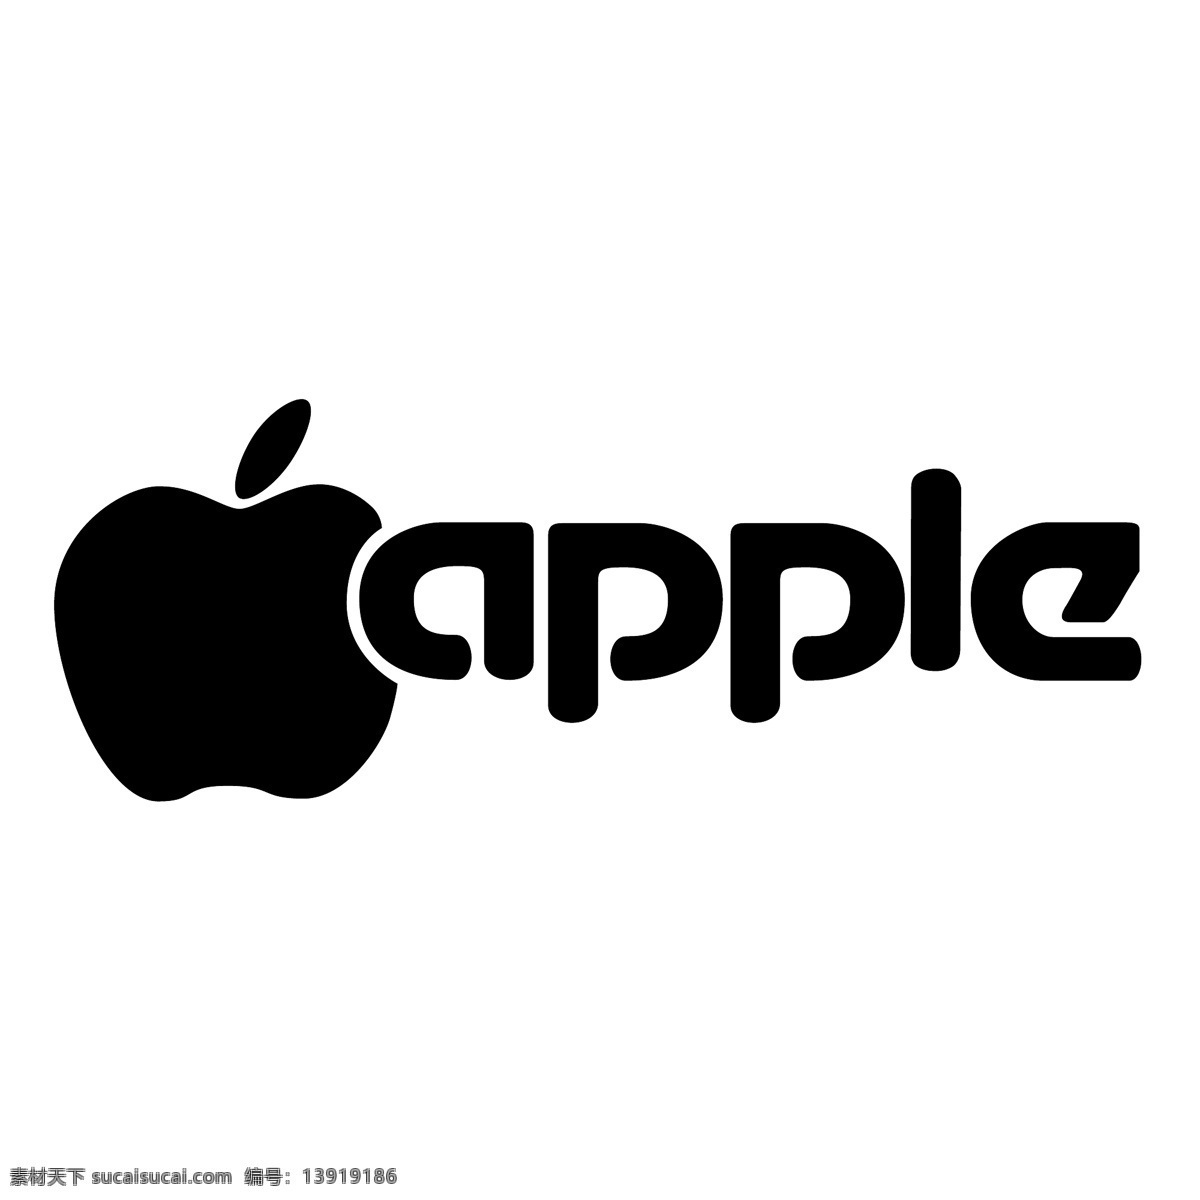 苹果8 苹果 苹果ipad 苹果矢量 苹果树 免费 logo 矢量 艺术 矢量图 ipad 图标 2白 电脑 载体 imac 台式电脑 建筑家居